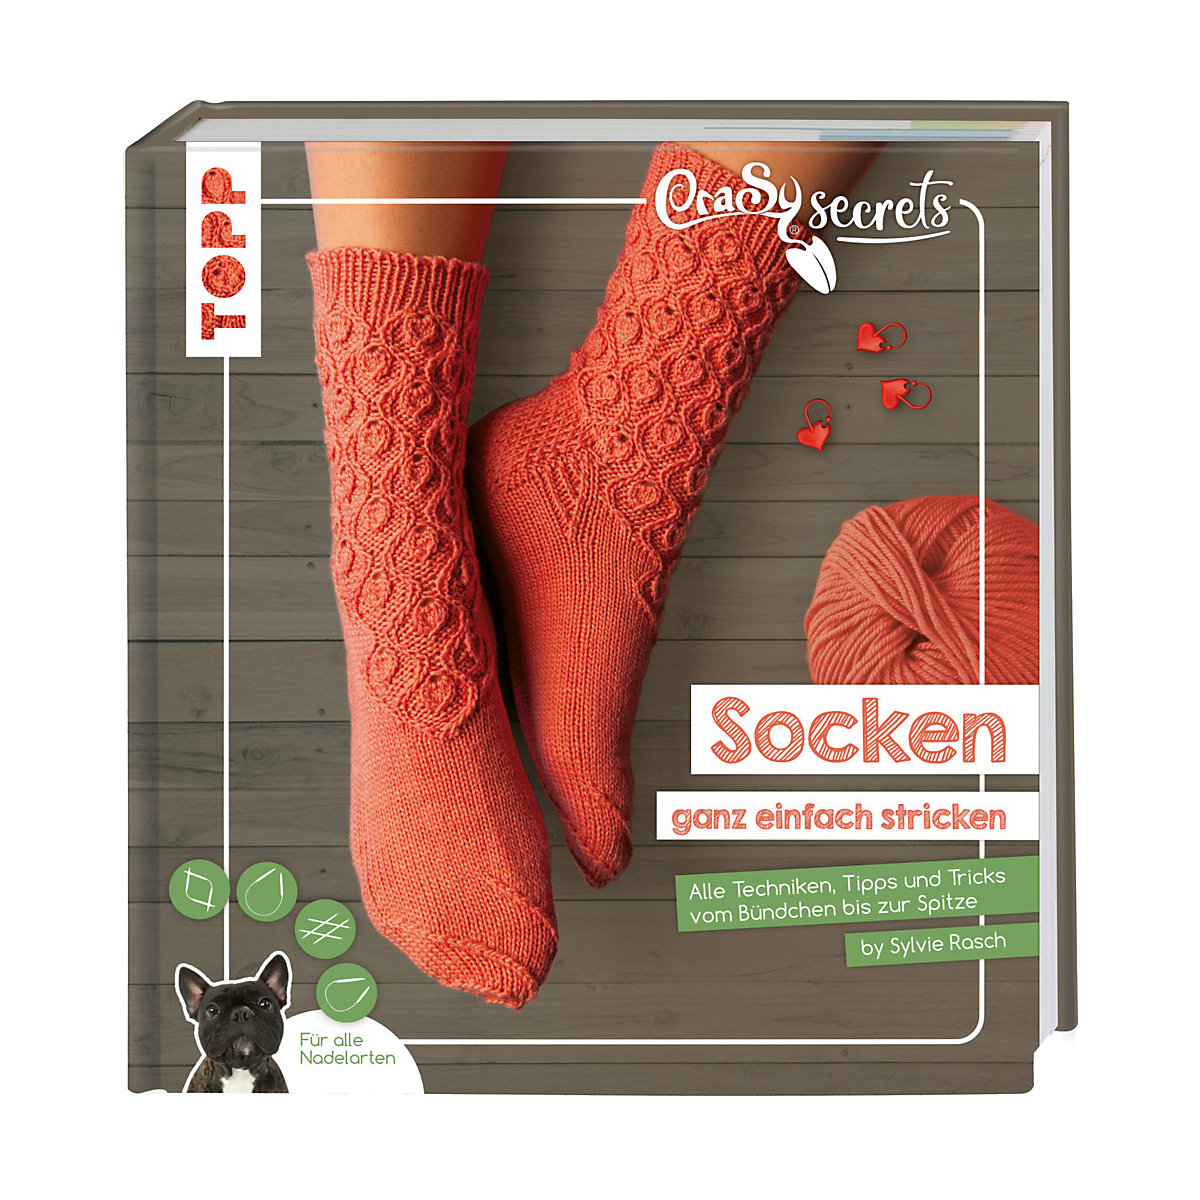 CraSy Secrets Socken ganz einfach stricken